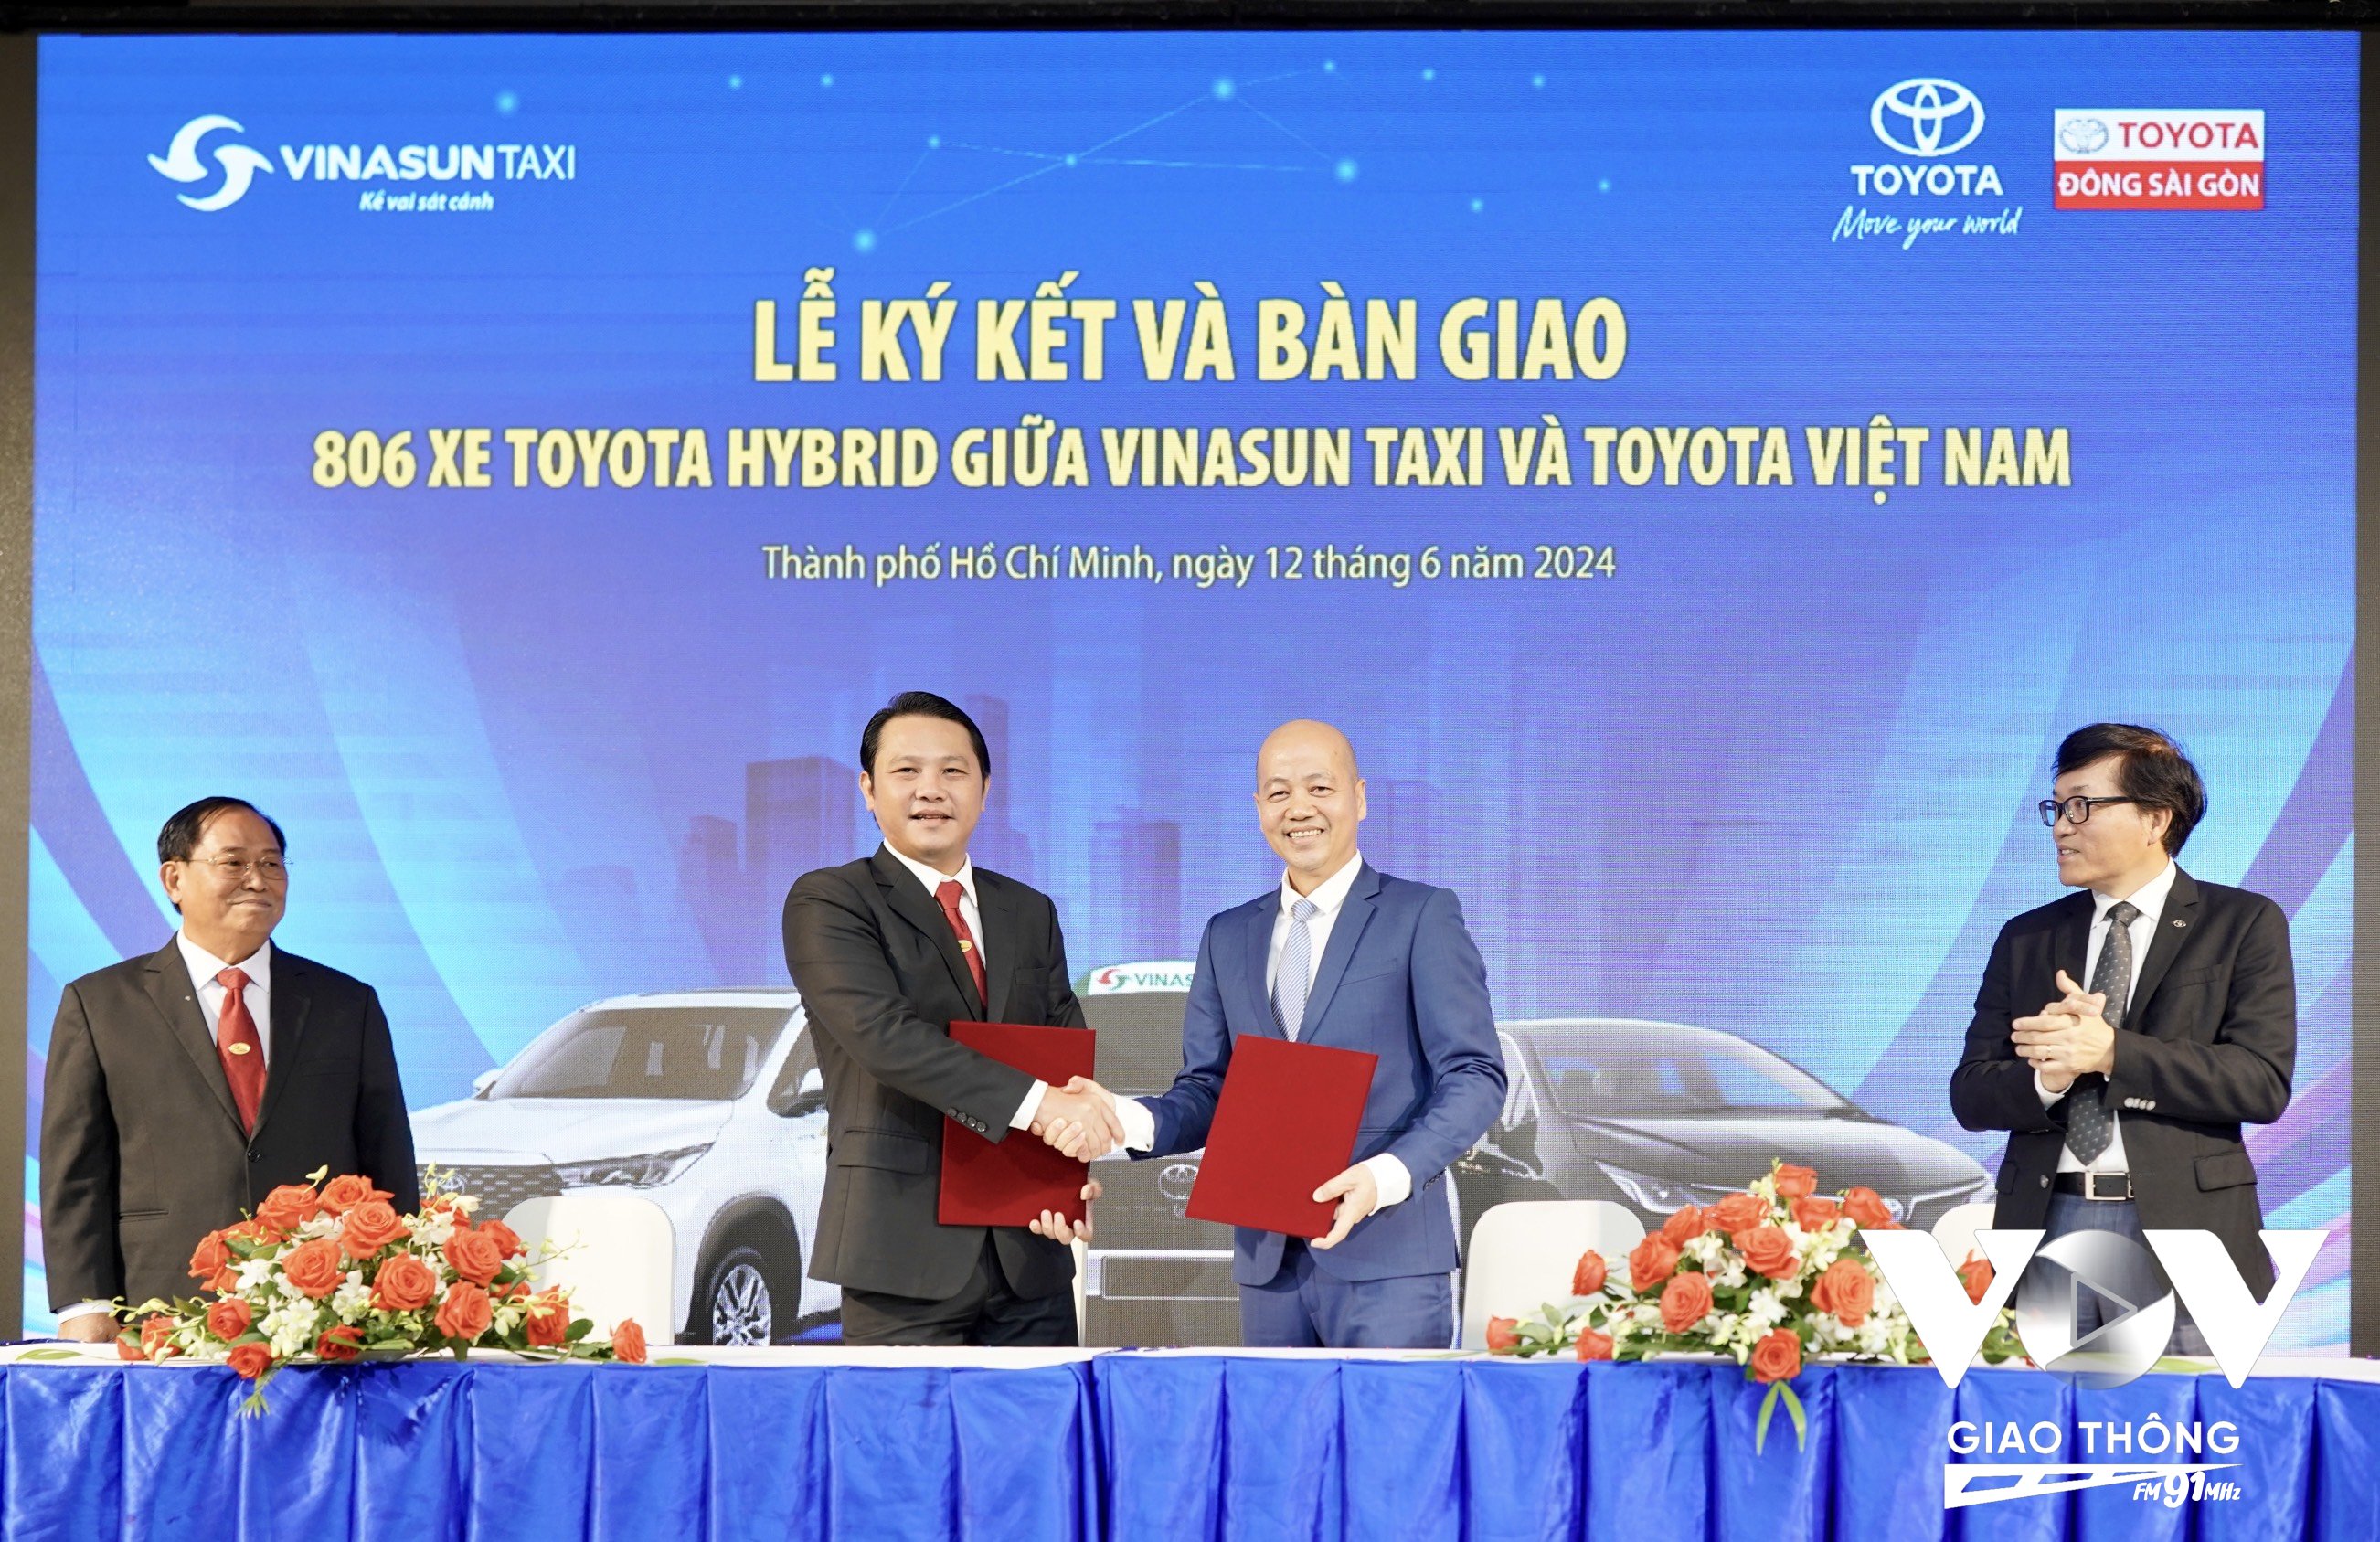 Đại diện Toyota Việt Nam trao chìa khoá tượng trưng của lô xe hybrid đầu tiên cho Vinasun để đưa vào khai thác dịch vụ Taxi hybrid đầu tiên tại Việt Nam